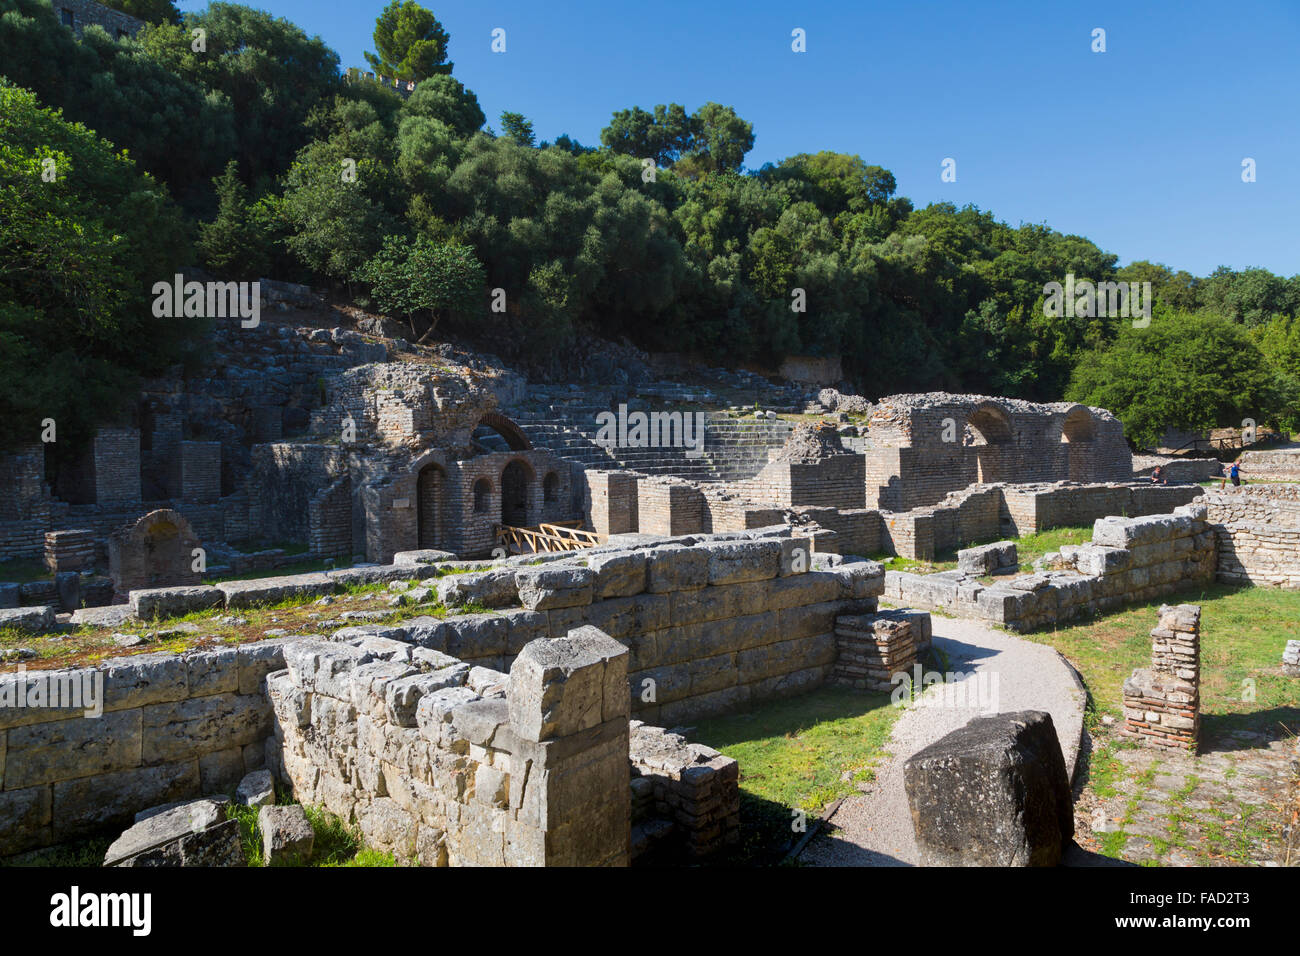 L'Albanie. Site archéologique de Butrint ou Buthrotum, Site du patrimoine mondial de l'UNESCO. Entrée du théâtre. Banque D'Images